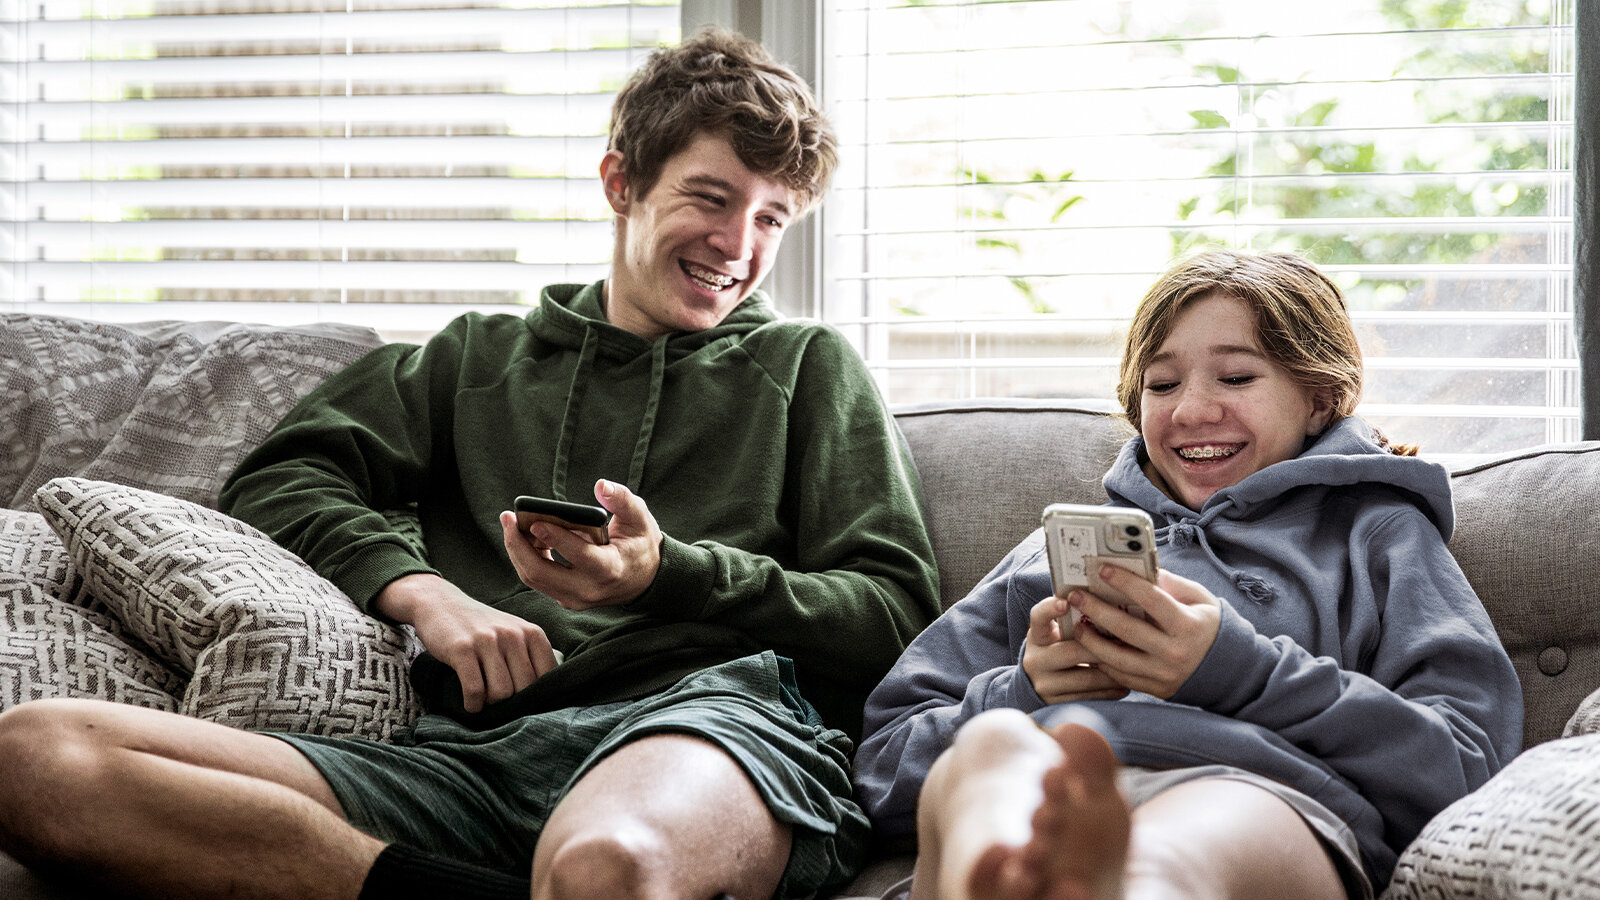 Junge und Mädchen sitzen mit Smartphones in den Händen auf einer Couch und lachen